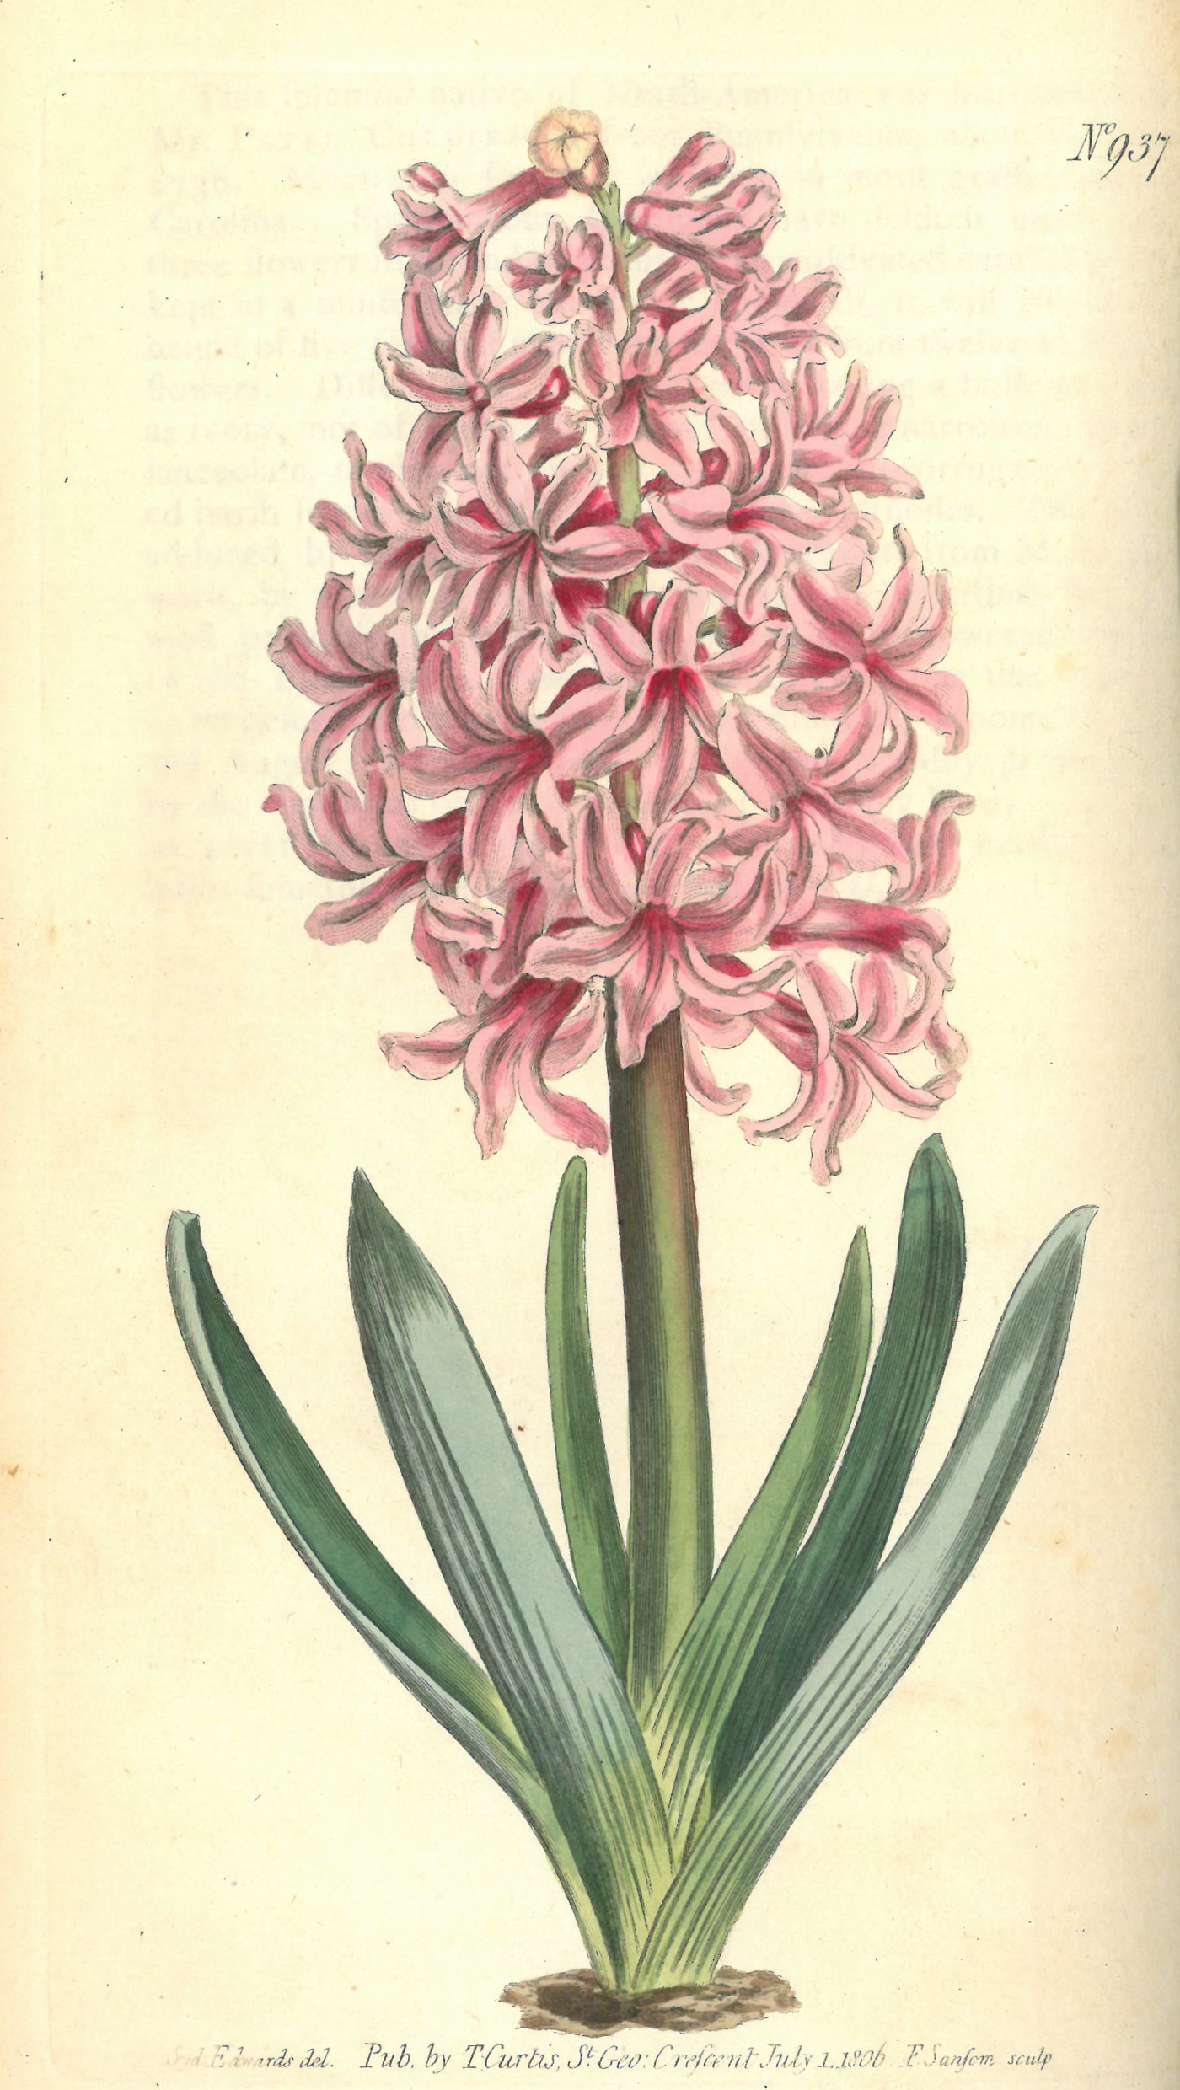 Botanische Illustration einer rosafarben blühenden Hyacinthe.